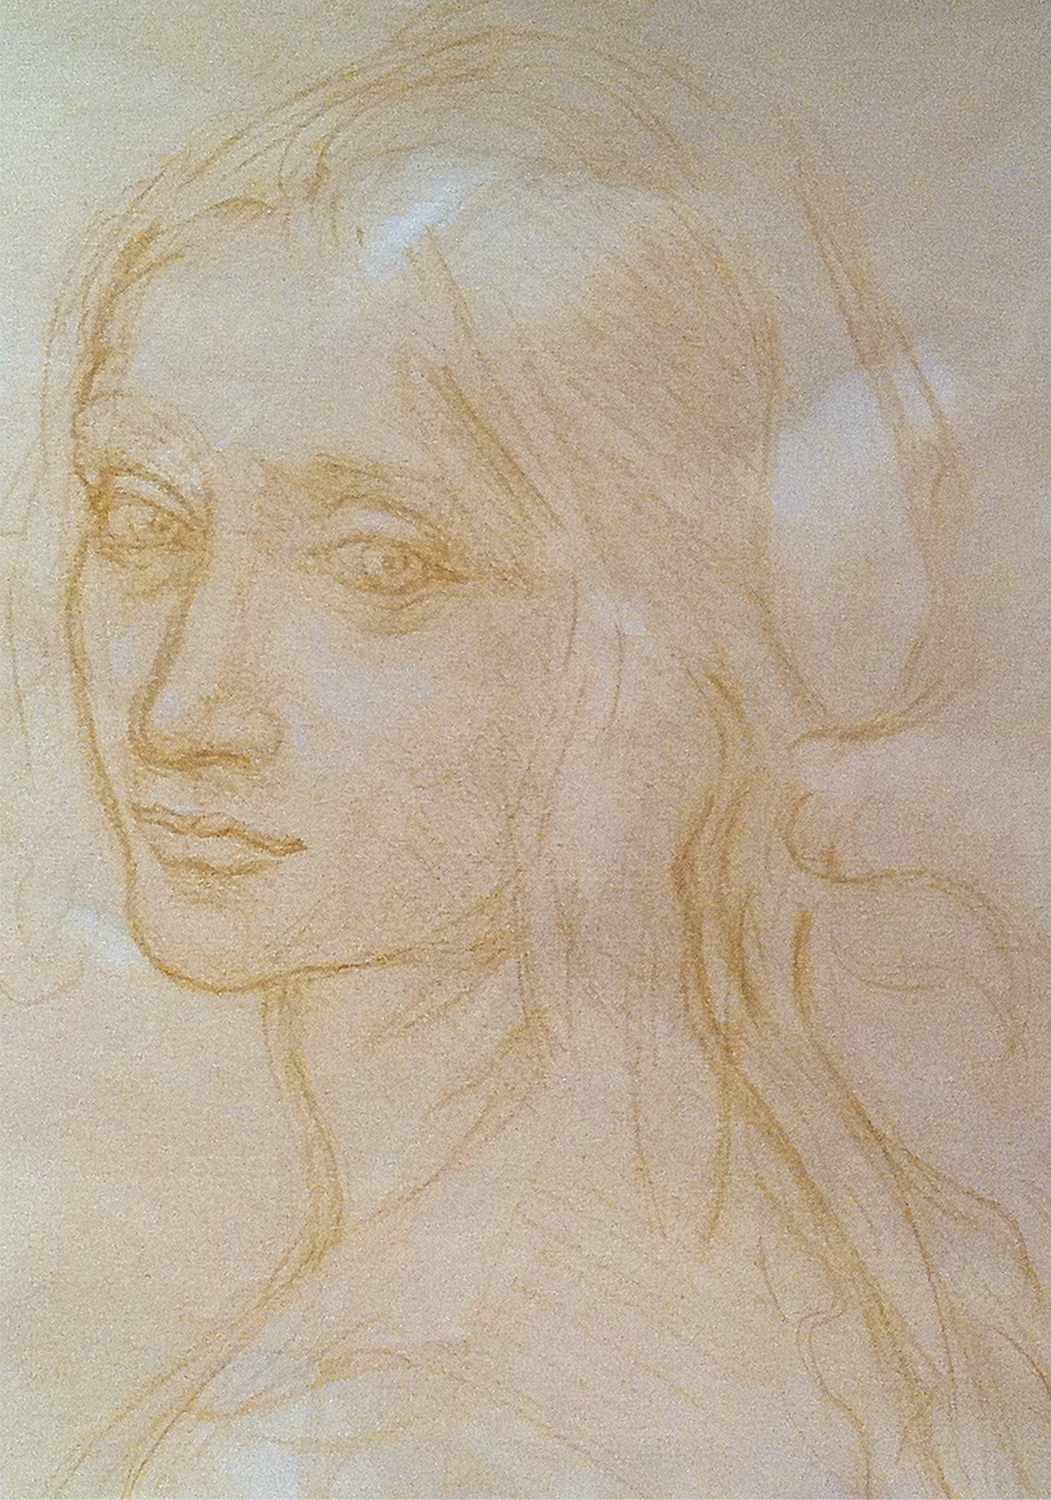 Da Vinci Study